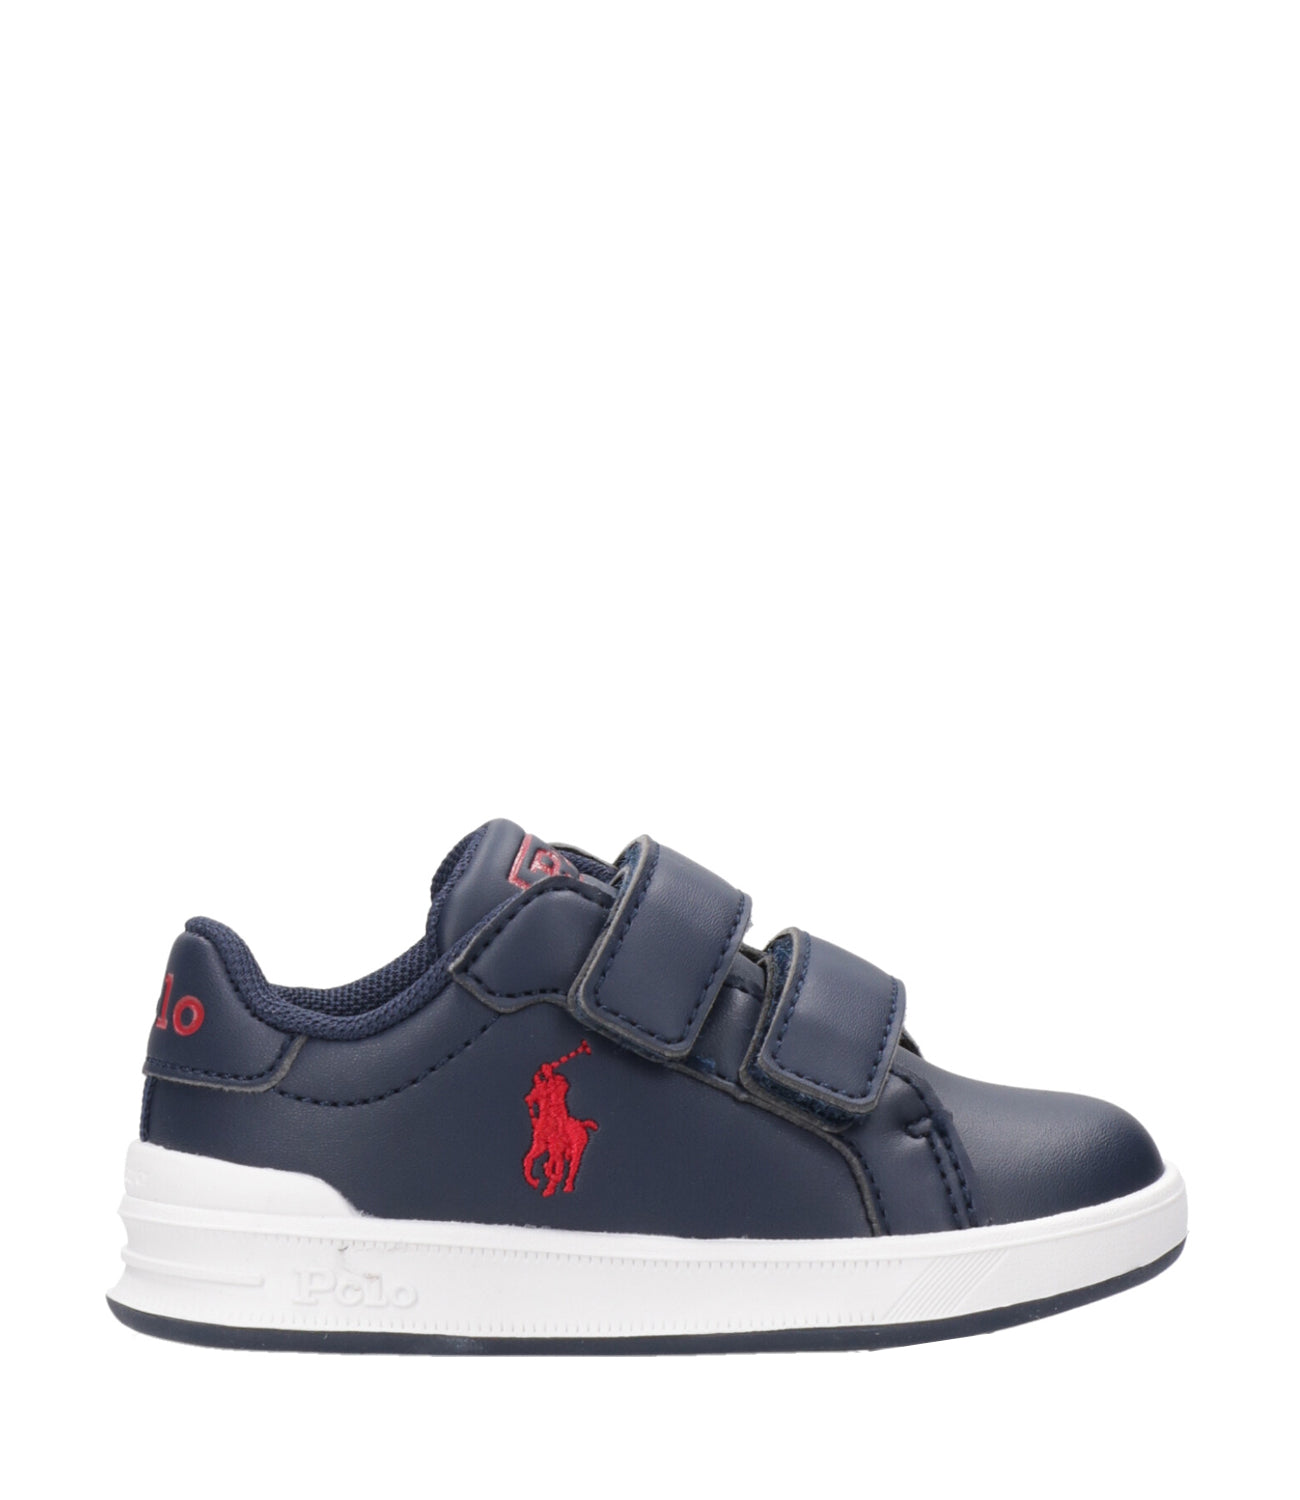 Ralph Lauren Childrenswear | Heritage Court II EZ Sneakers Navy Blue and Red